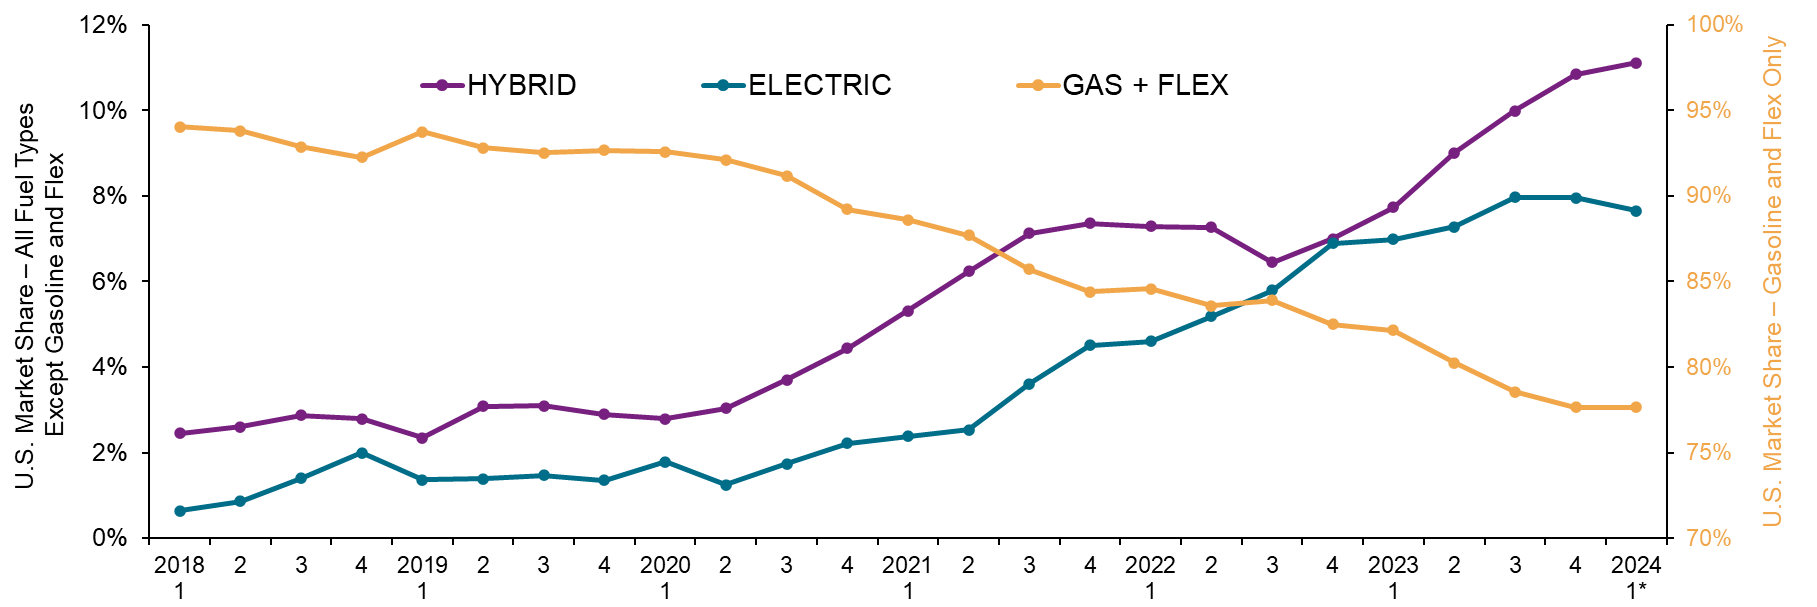 شکل 2 - سهم بازار ،ده فروشی بر اساس نوع سوخت، از سال 2018 تا 2024